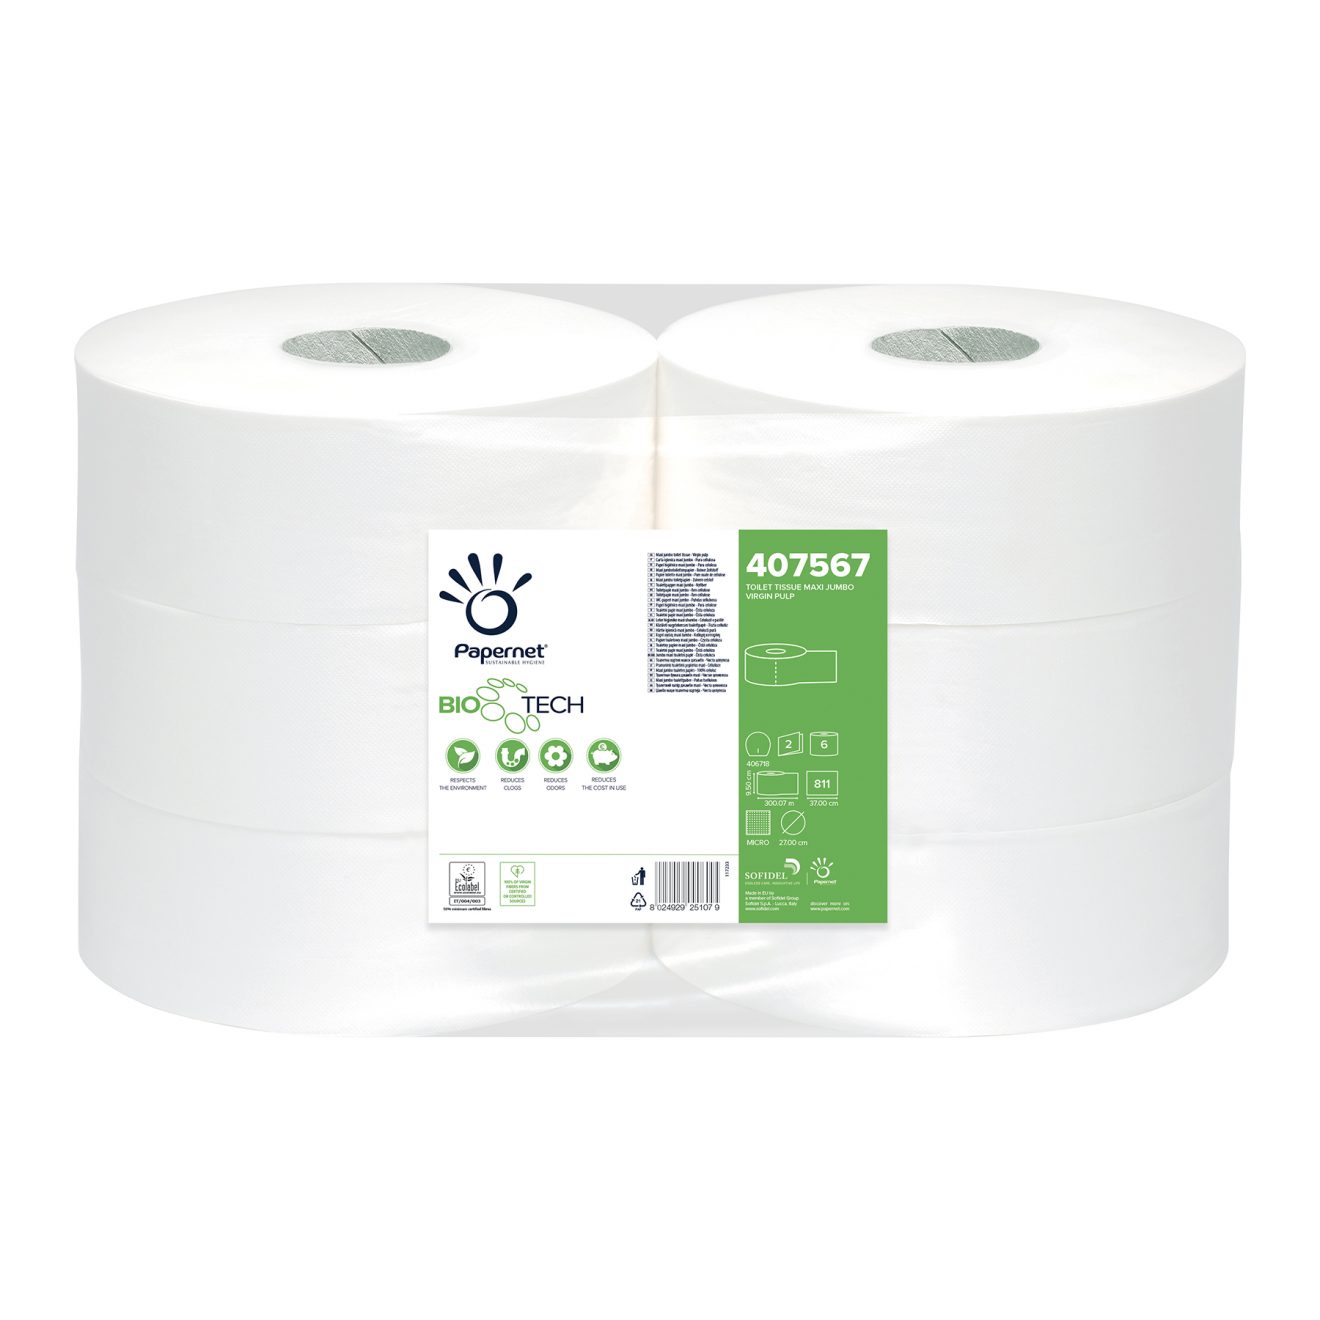 Papier toilette maxi jumbo - Colis 6 rouleaux ECOLABEL - R'net Groupe